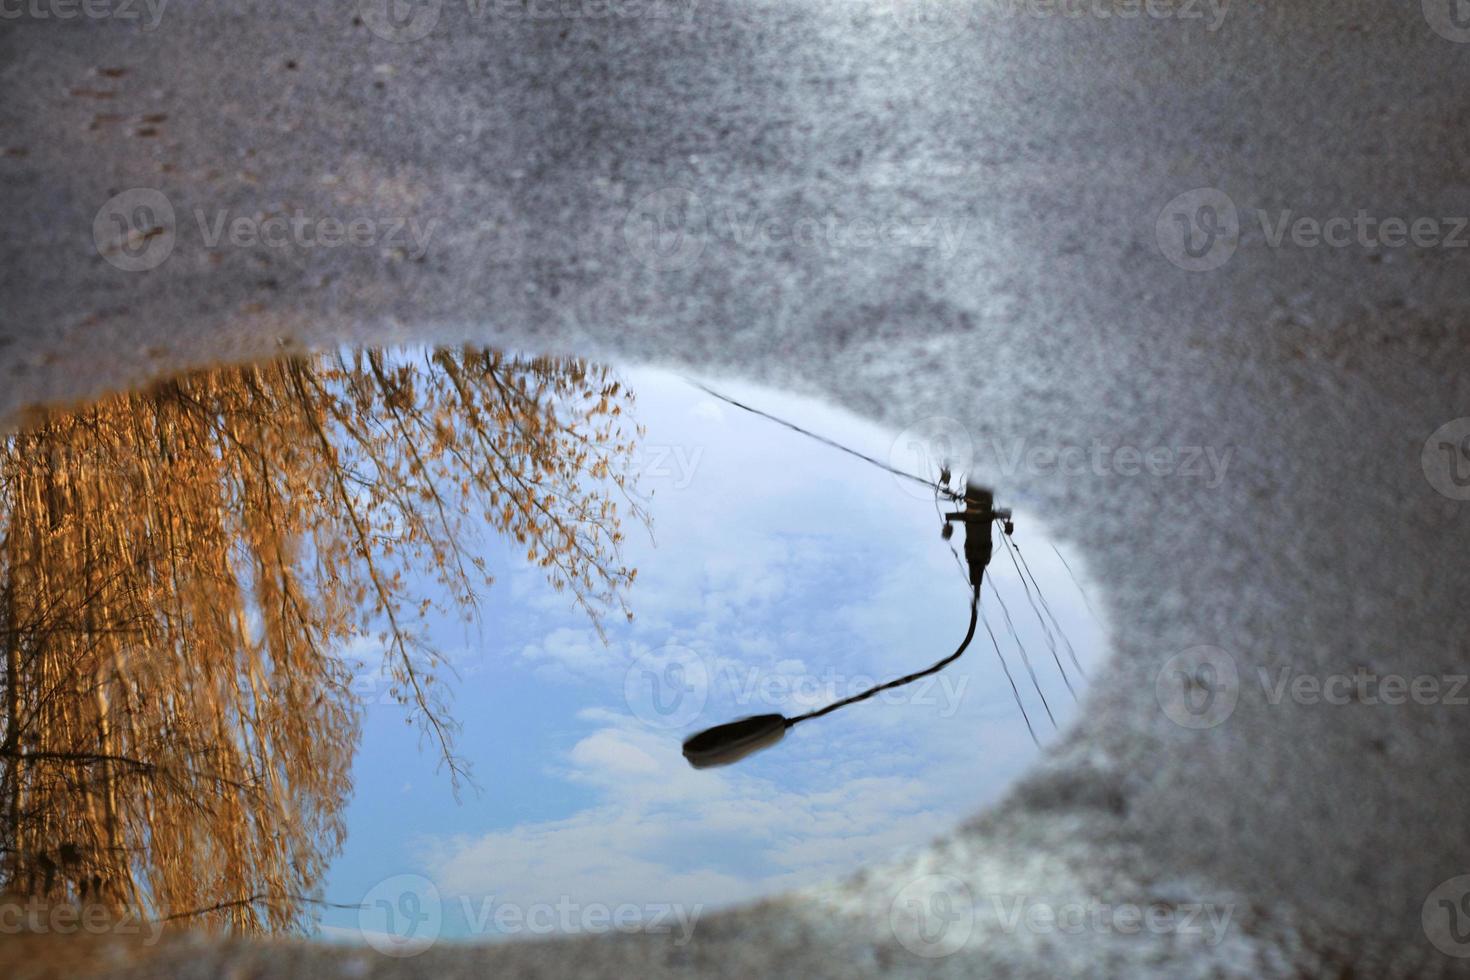 reflet du ciel, la silhouette d'un réverbère et un arbre éclairé par le soleil dans une flaque d'eau sur l'asphalte. photo